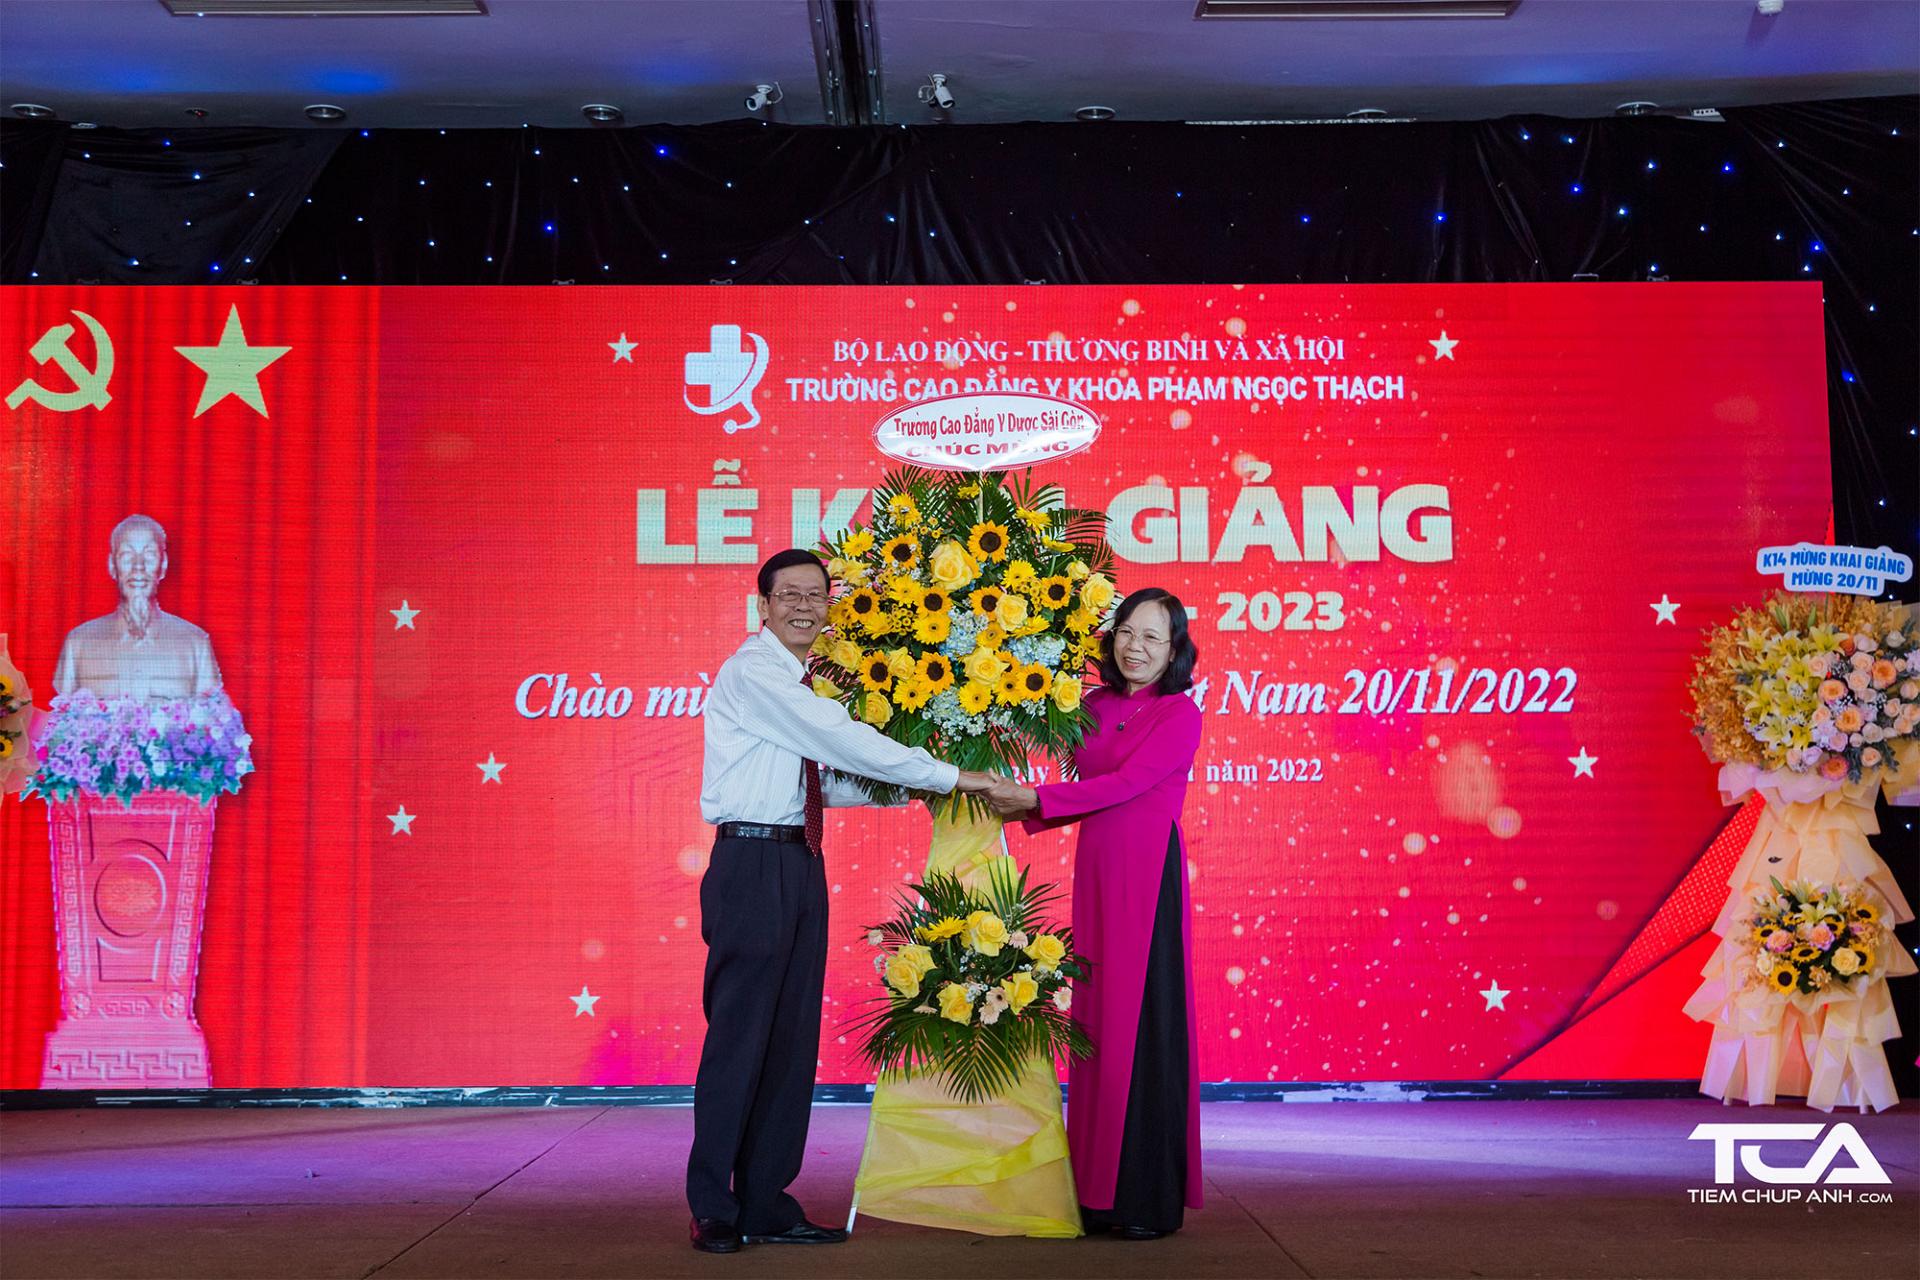 Đại diện Trường Cao đẳng Y khoa Phạm Ngọc Thạch nhận hoa chúc mừng